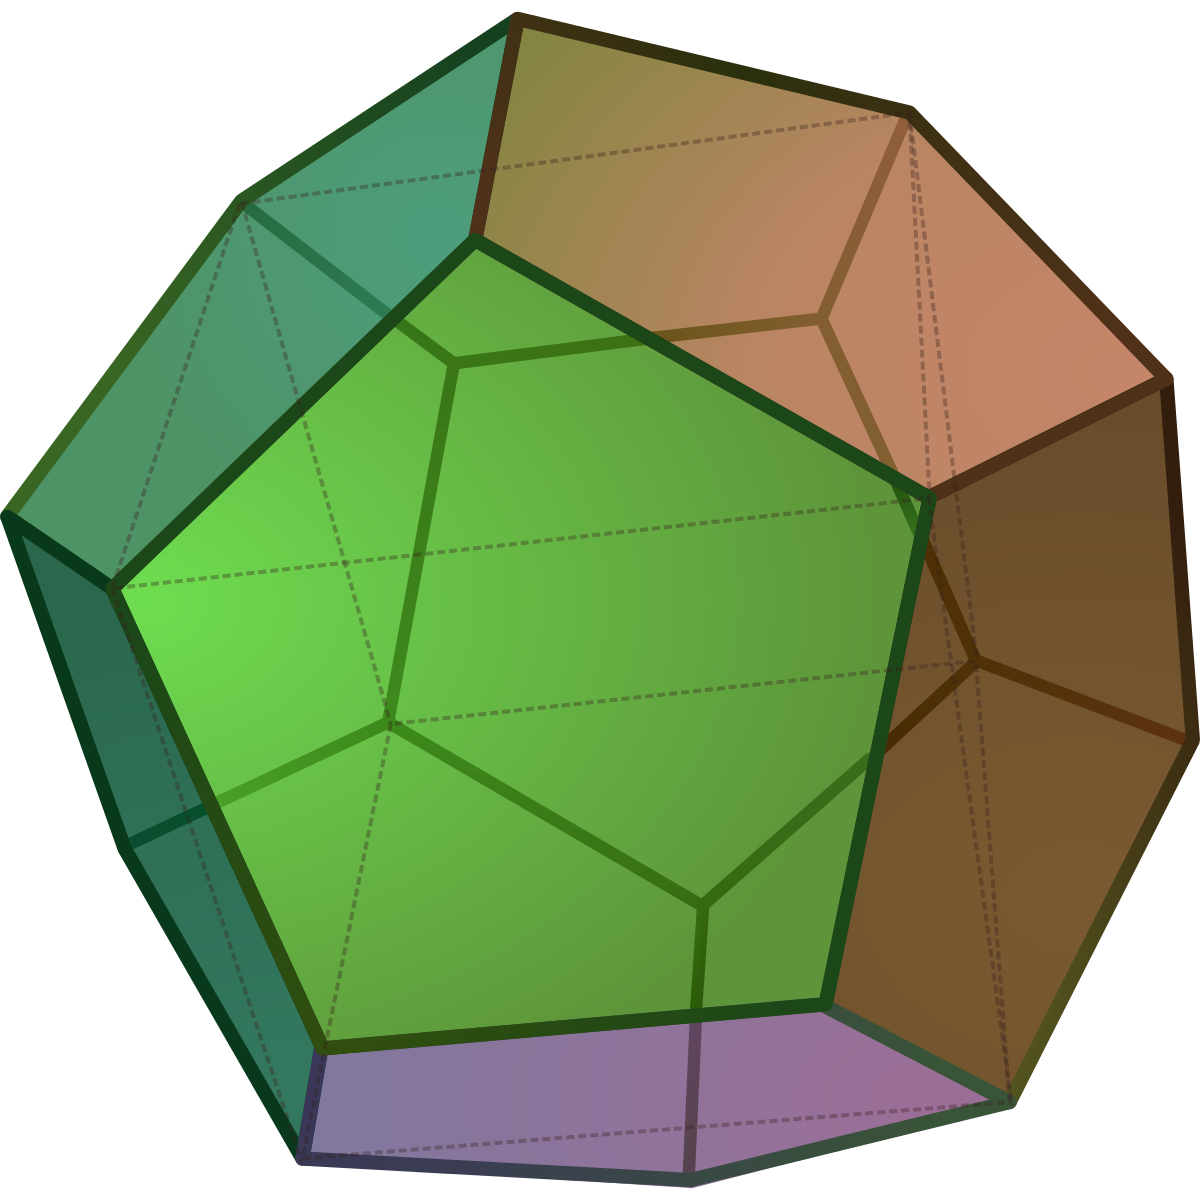 Многогранник с двадцатью гранями. Правильные многогранники додекаэдр. Усечённый икосаэдр. Пентагональном икоситетраэдре. Pentagonal icositetrahedron.